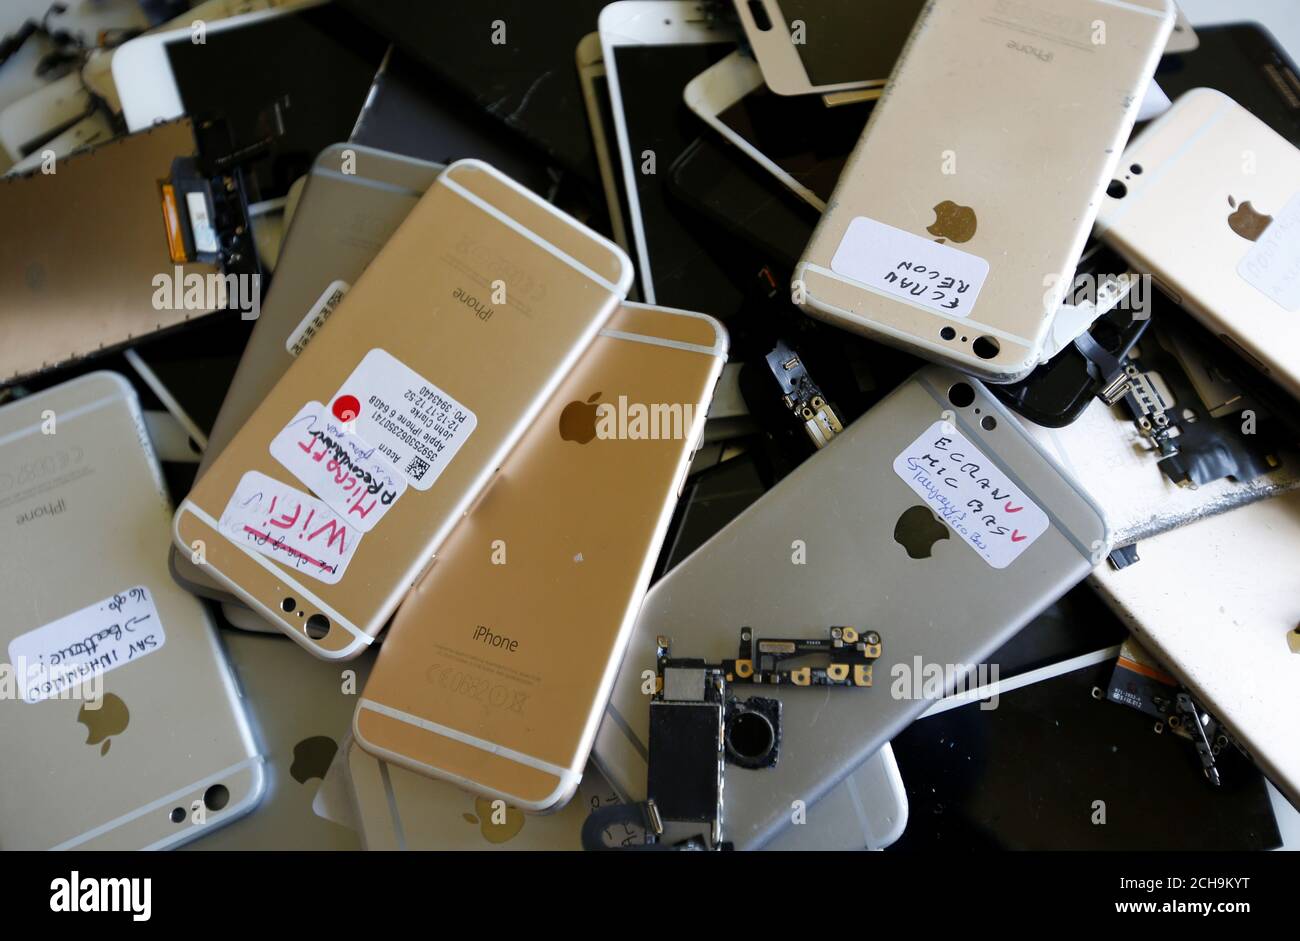 El trabajador comprueba el iPhone de Apple mientras renueva los teléfonos  celulares en un taller de la empresa Oxflo, especializado en la renovación  de los smartphones europeos rotos que se revenderán y